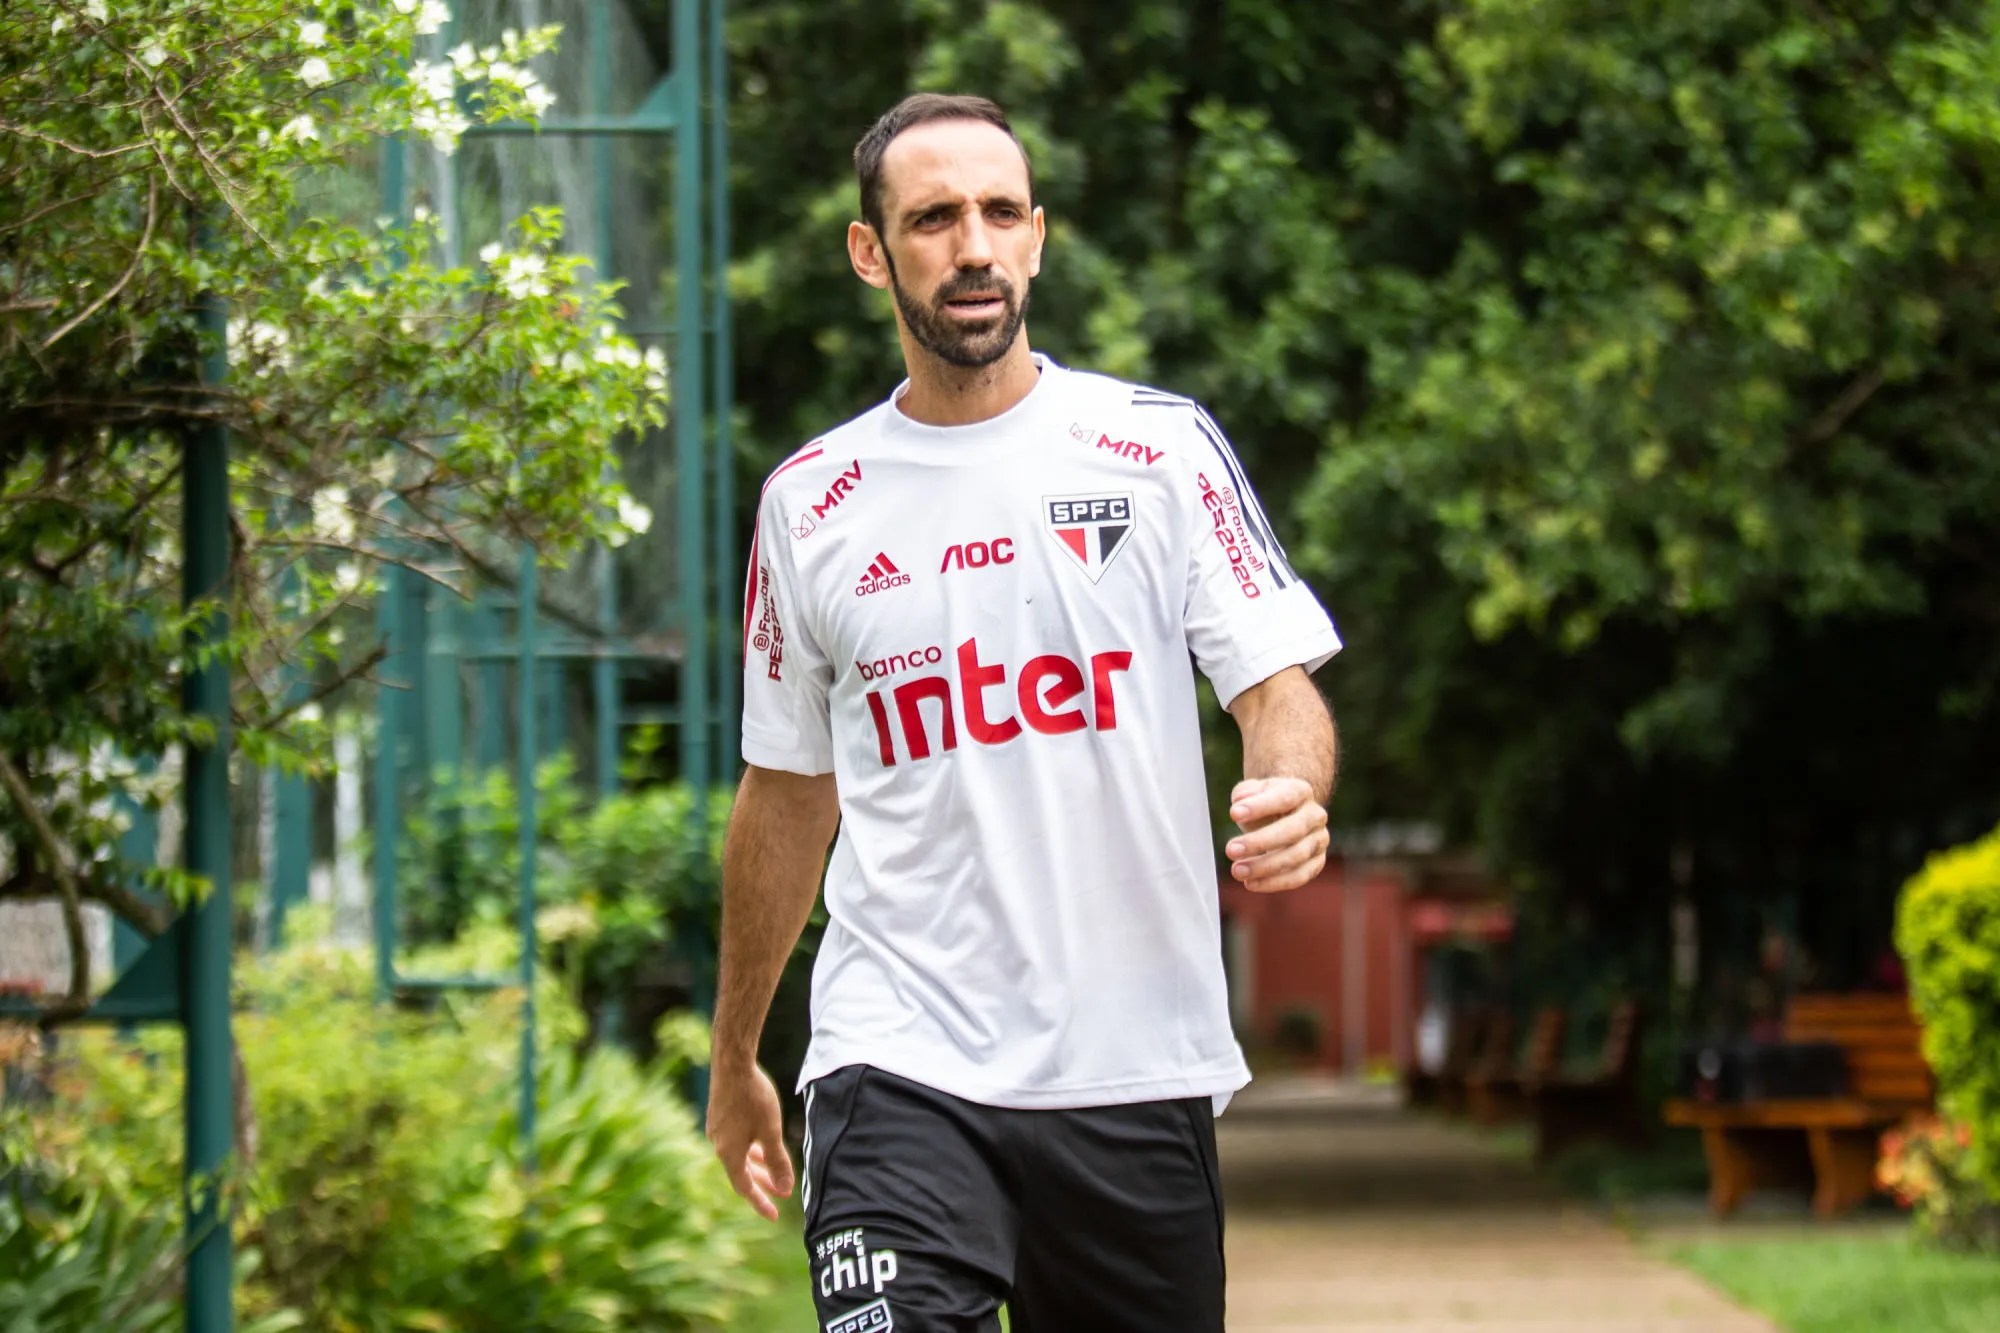 Malgré les critiques, Juanfran est «<span style="font-size:50%">&nbsp;</span>fier de porter le maillot de São Paulo<span style="font-size:50%">&nbsp;</span>»